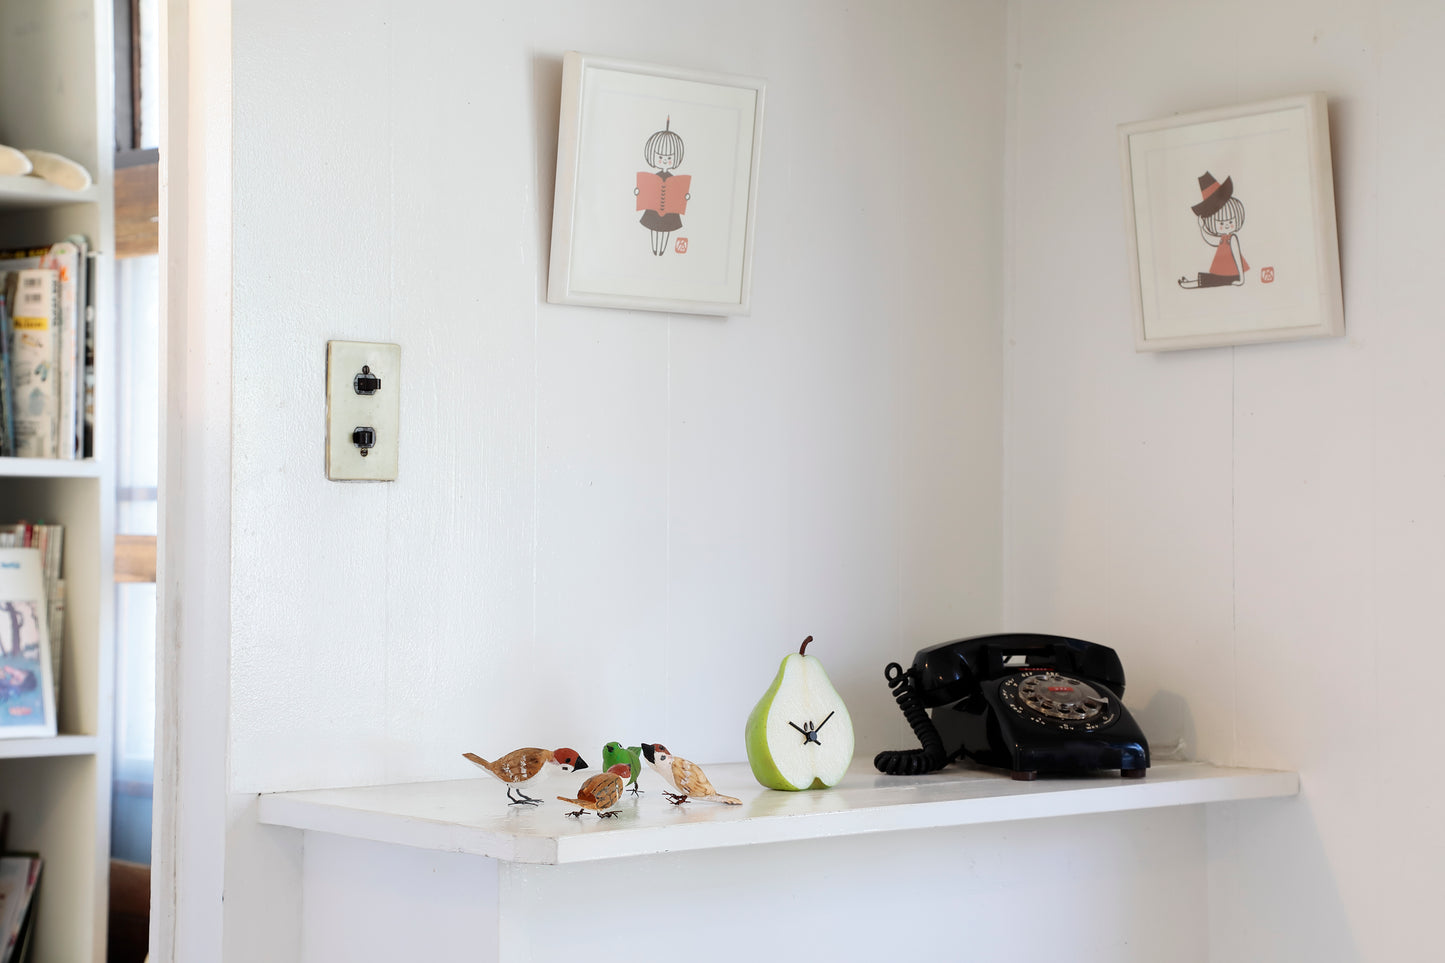 これは元祖食品サンプル屋「Replica Food Clock  ラ・フランス」の部屋に置いたイメージ写真です。